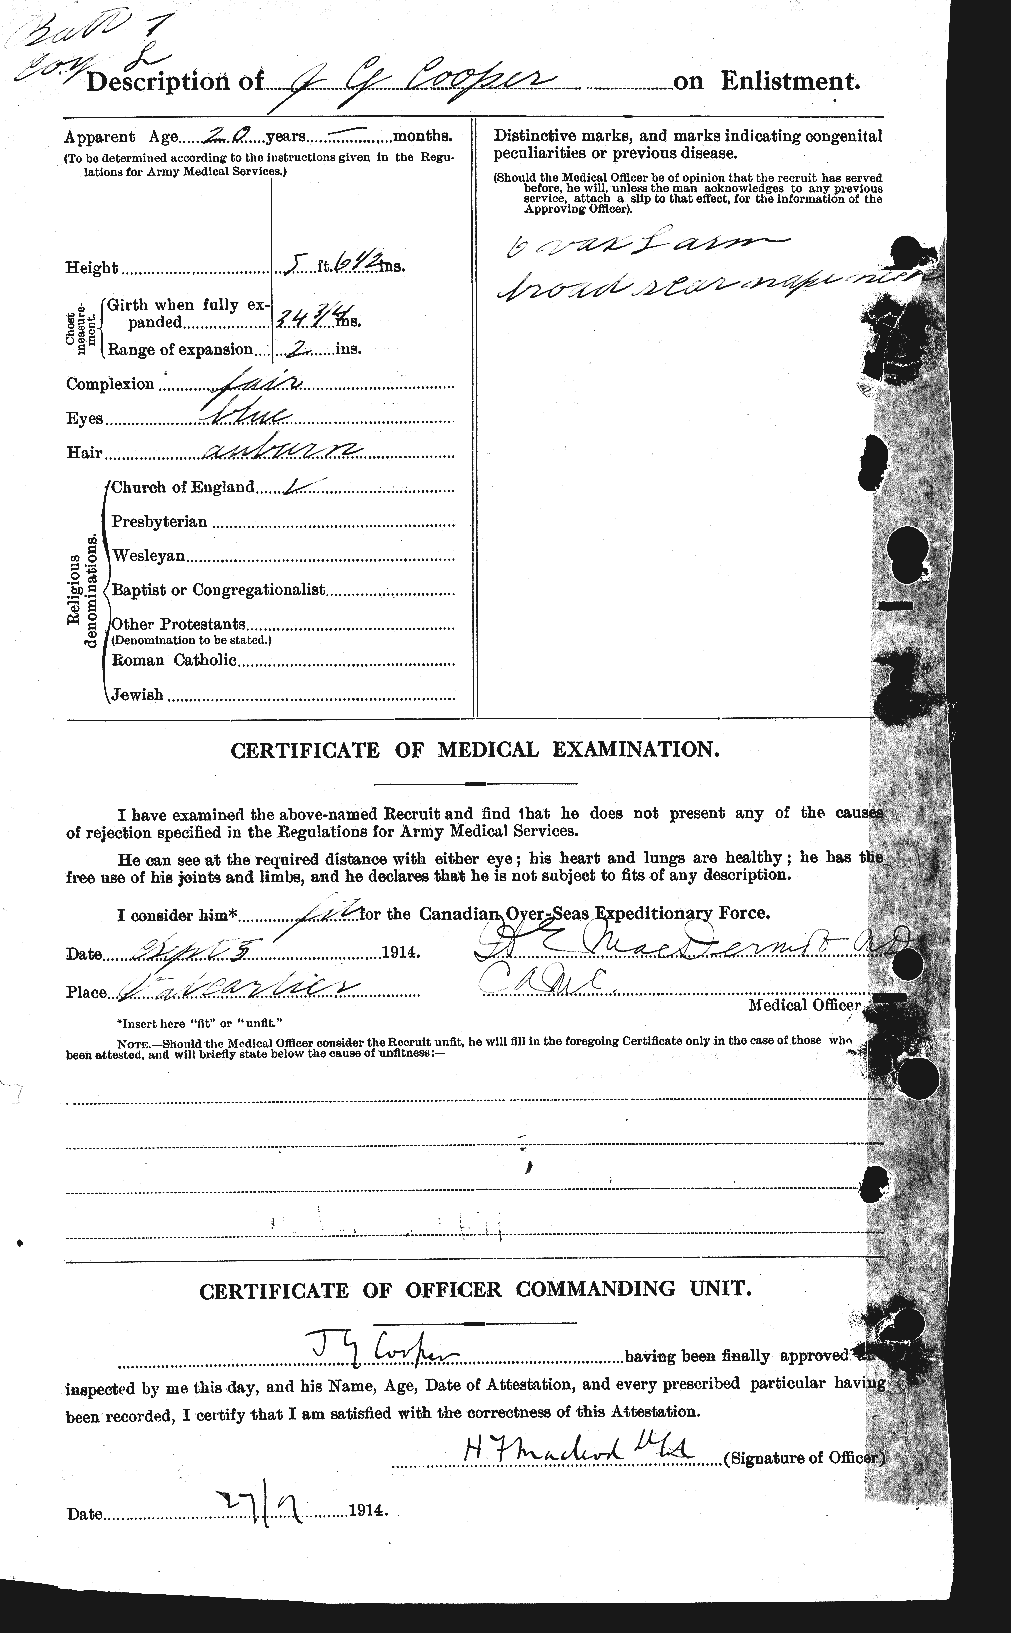 Dossiers du Personnel de la Première Guerre mondiale - CEC 056027b